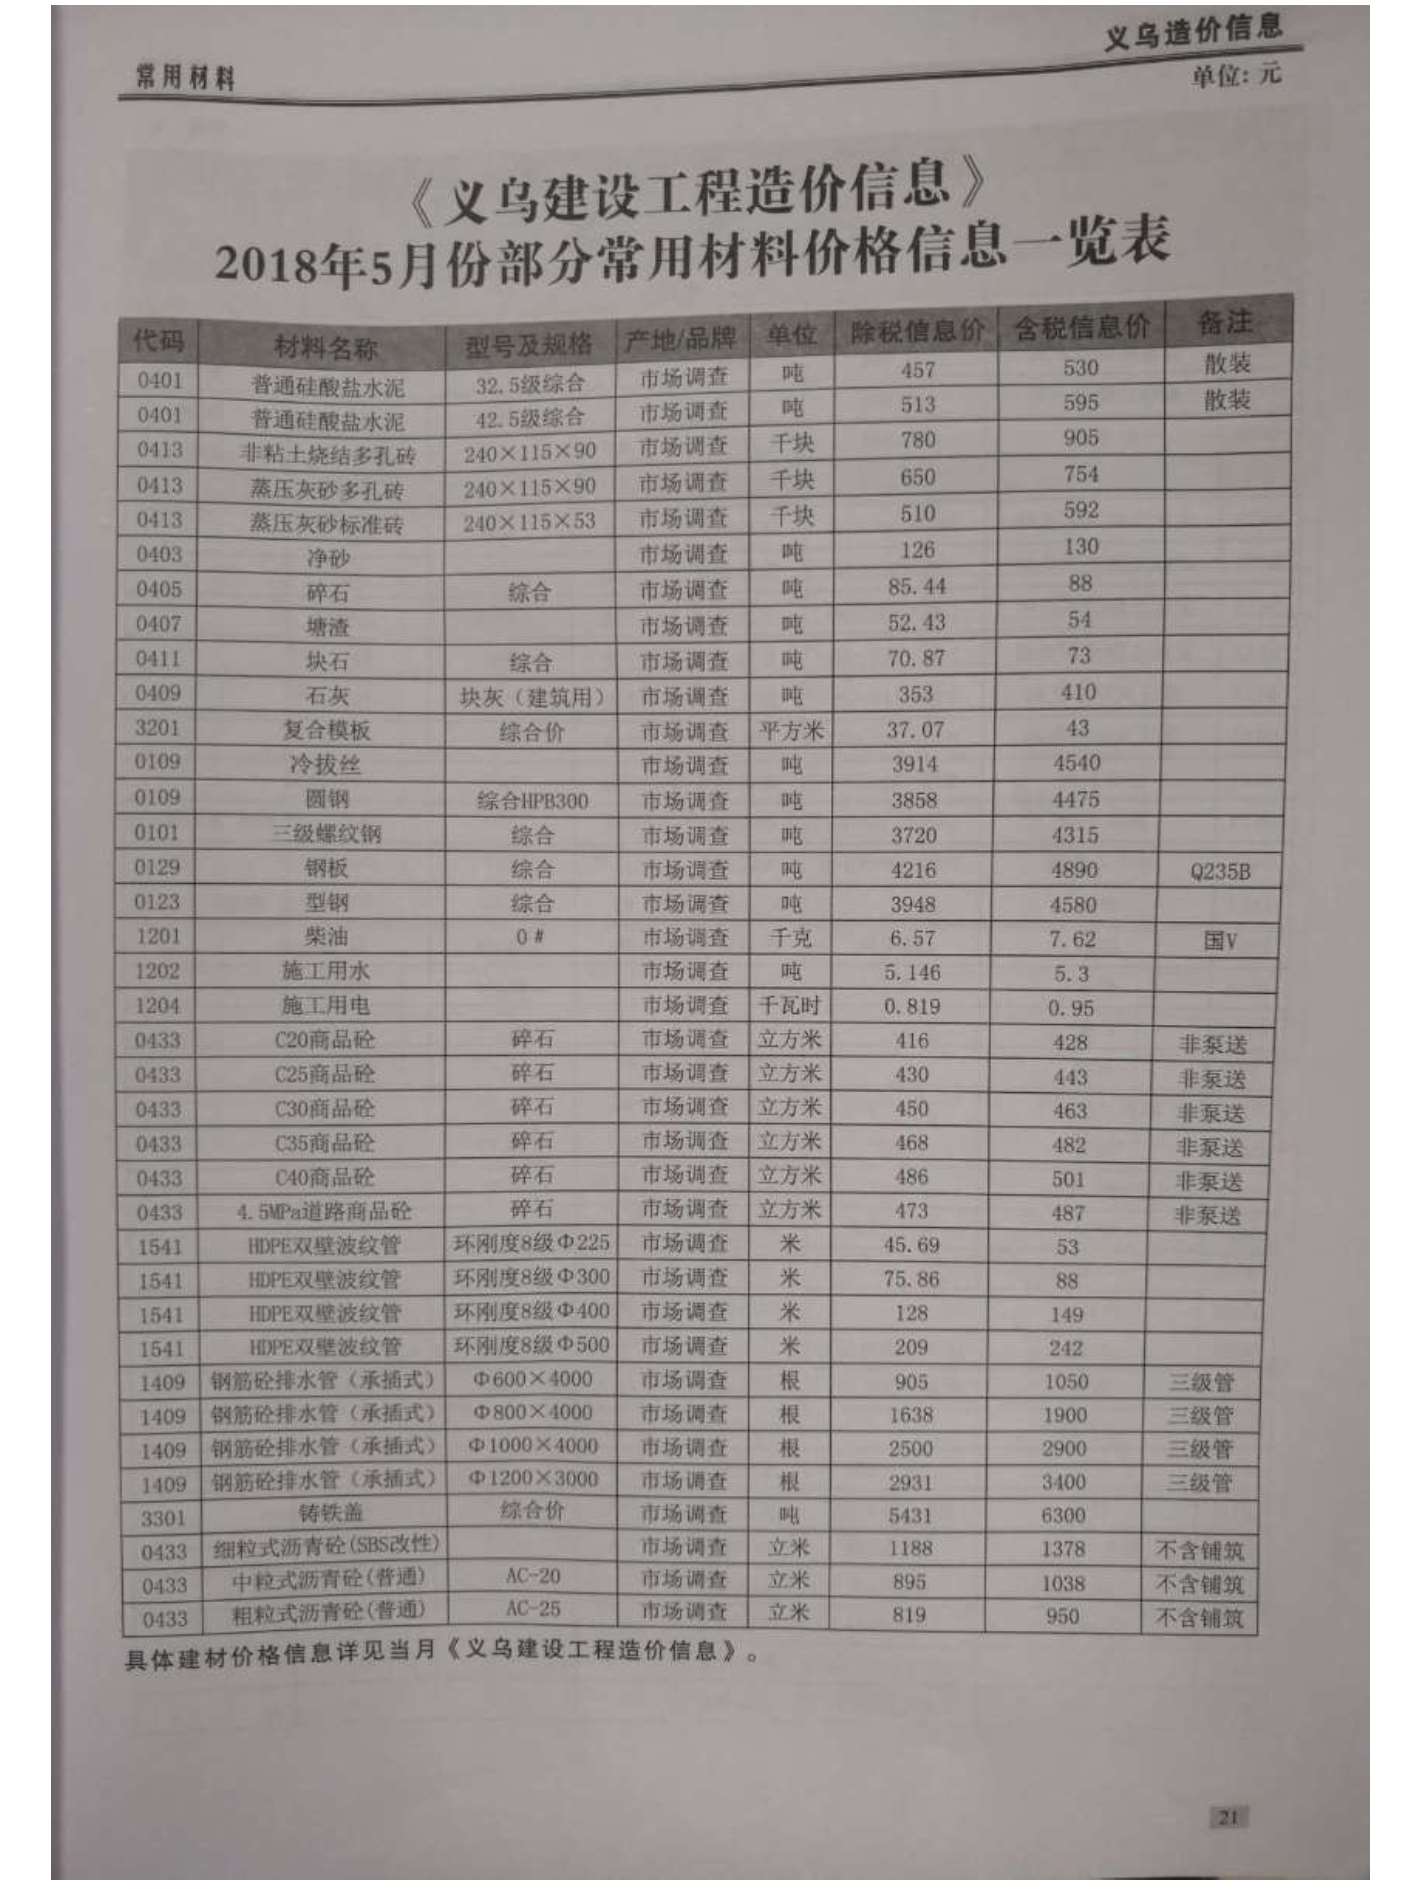 义乌市2018年5月信息价工程信息价_义乌市信息价期刊PDF扫描件电子版